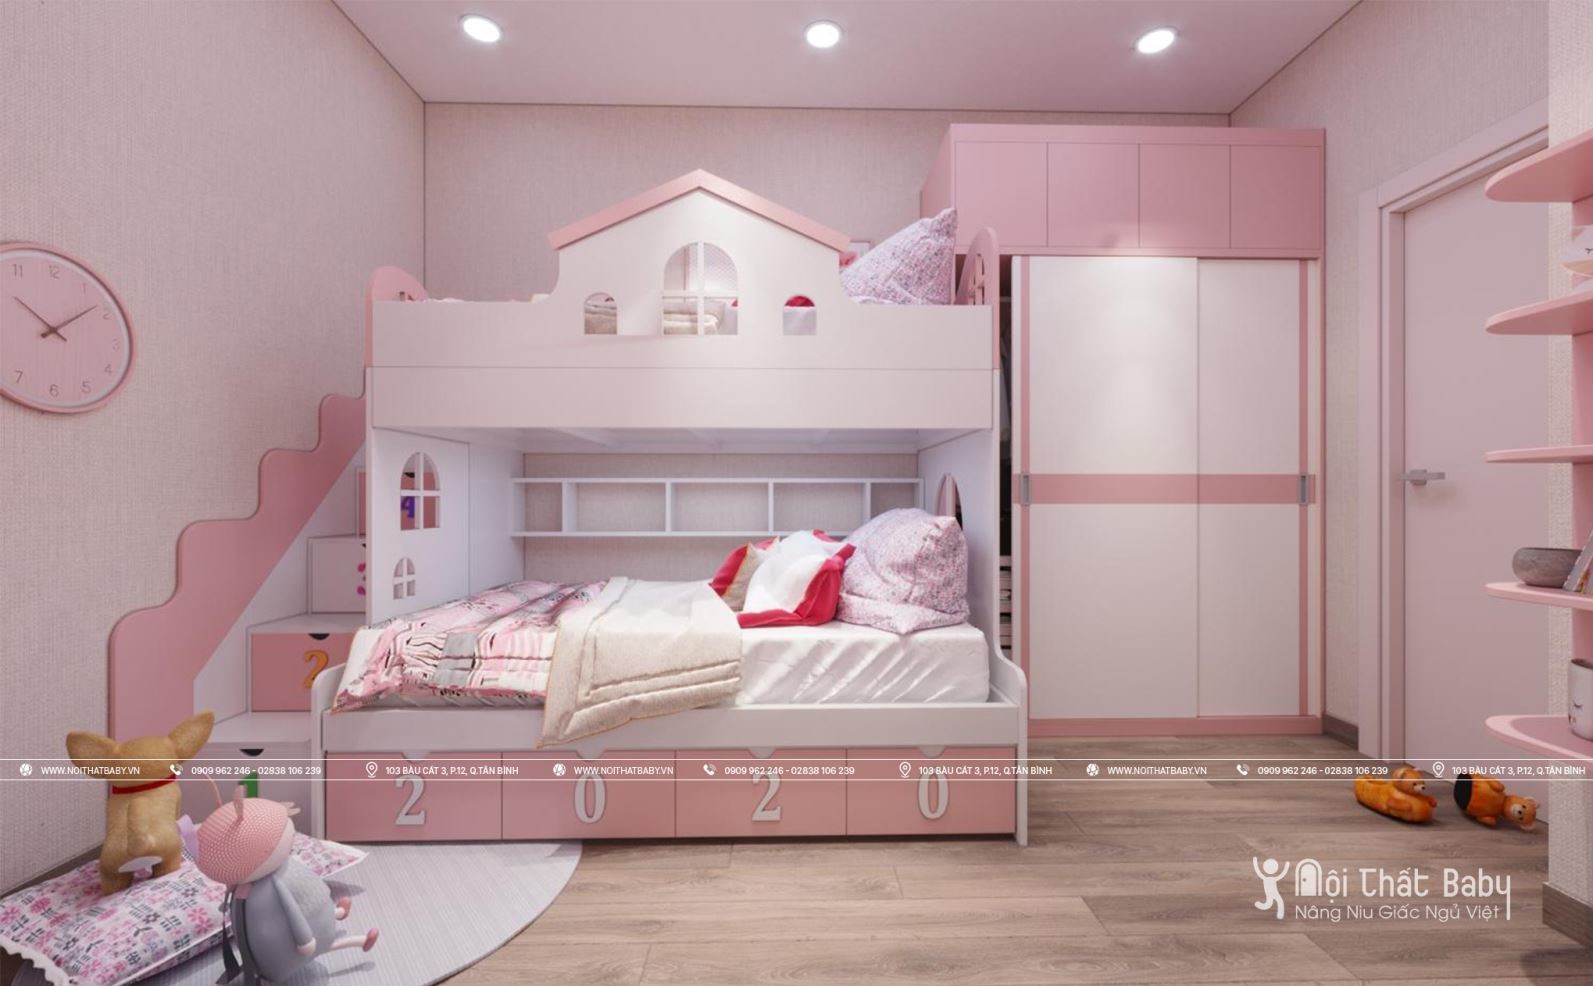 Giường tầng dành cho bé gái 2020 đẹp nhất và hoàn hảo nhất đã đến với chúng tôi! Giúp bé yêu của bạn có thể tận hưởng không gian riêng tư của mình với một mẫu giường hiện đại và phù hợp với nhu cầu của bạn. Đến ngay và tìm kiếm ngay sản phẩm mà bạn đang tìm kiếm.